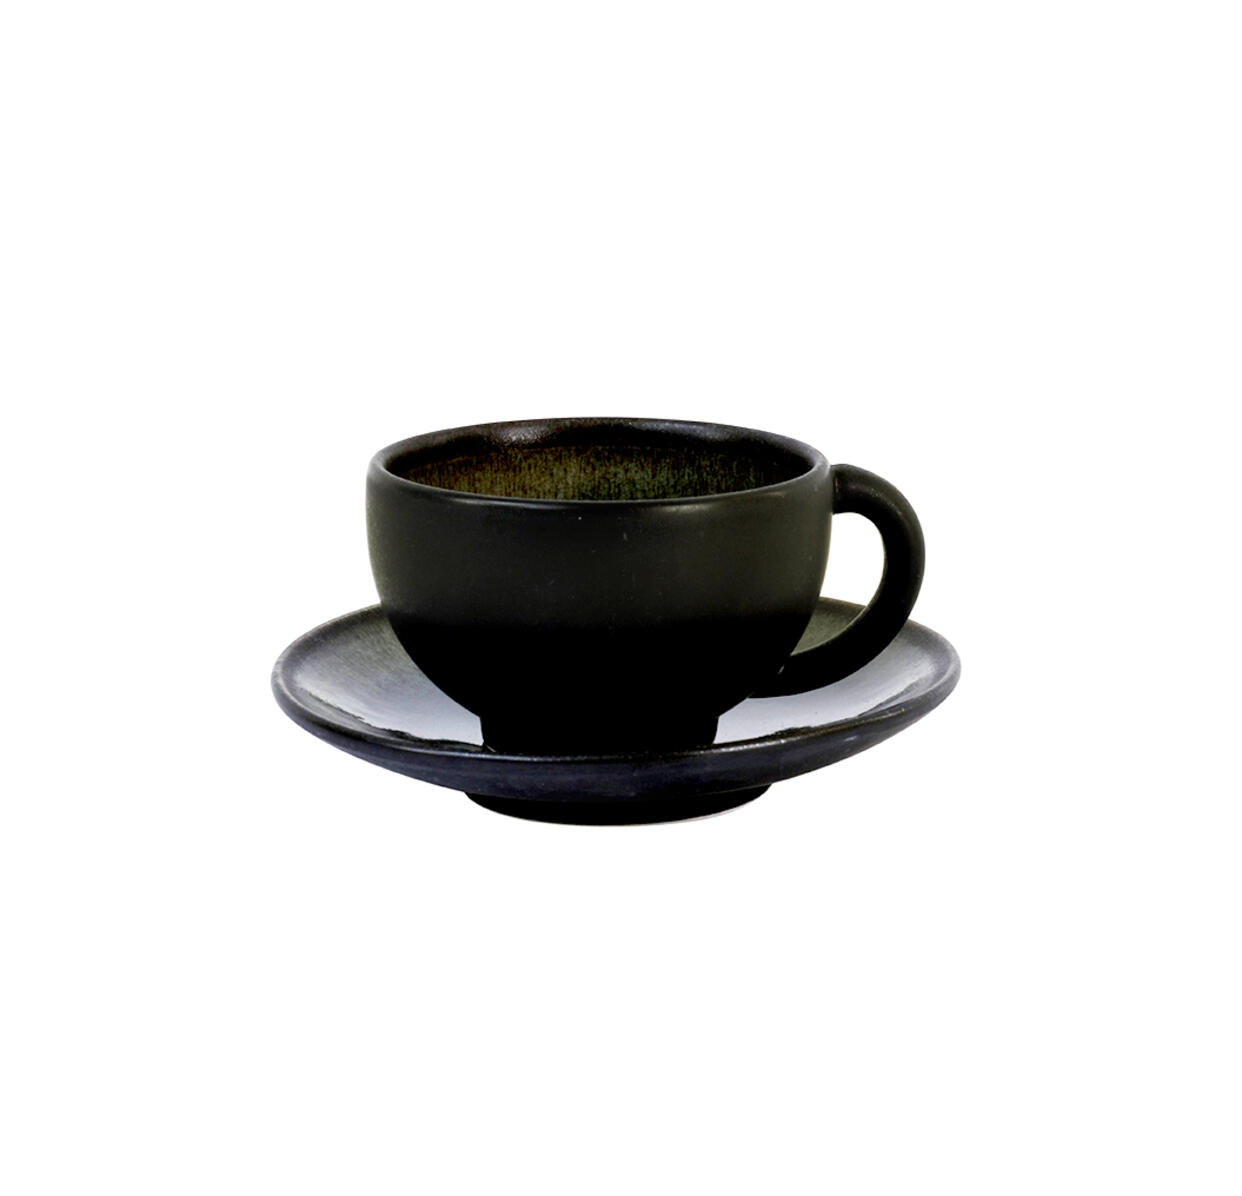 cup & saucer - m  tourron  samoa ceramic manufacturer